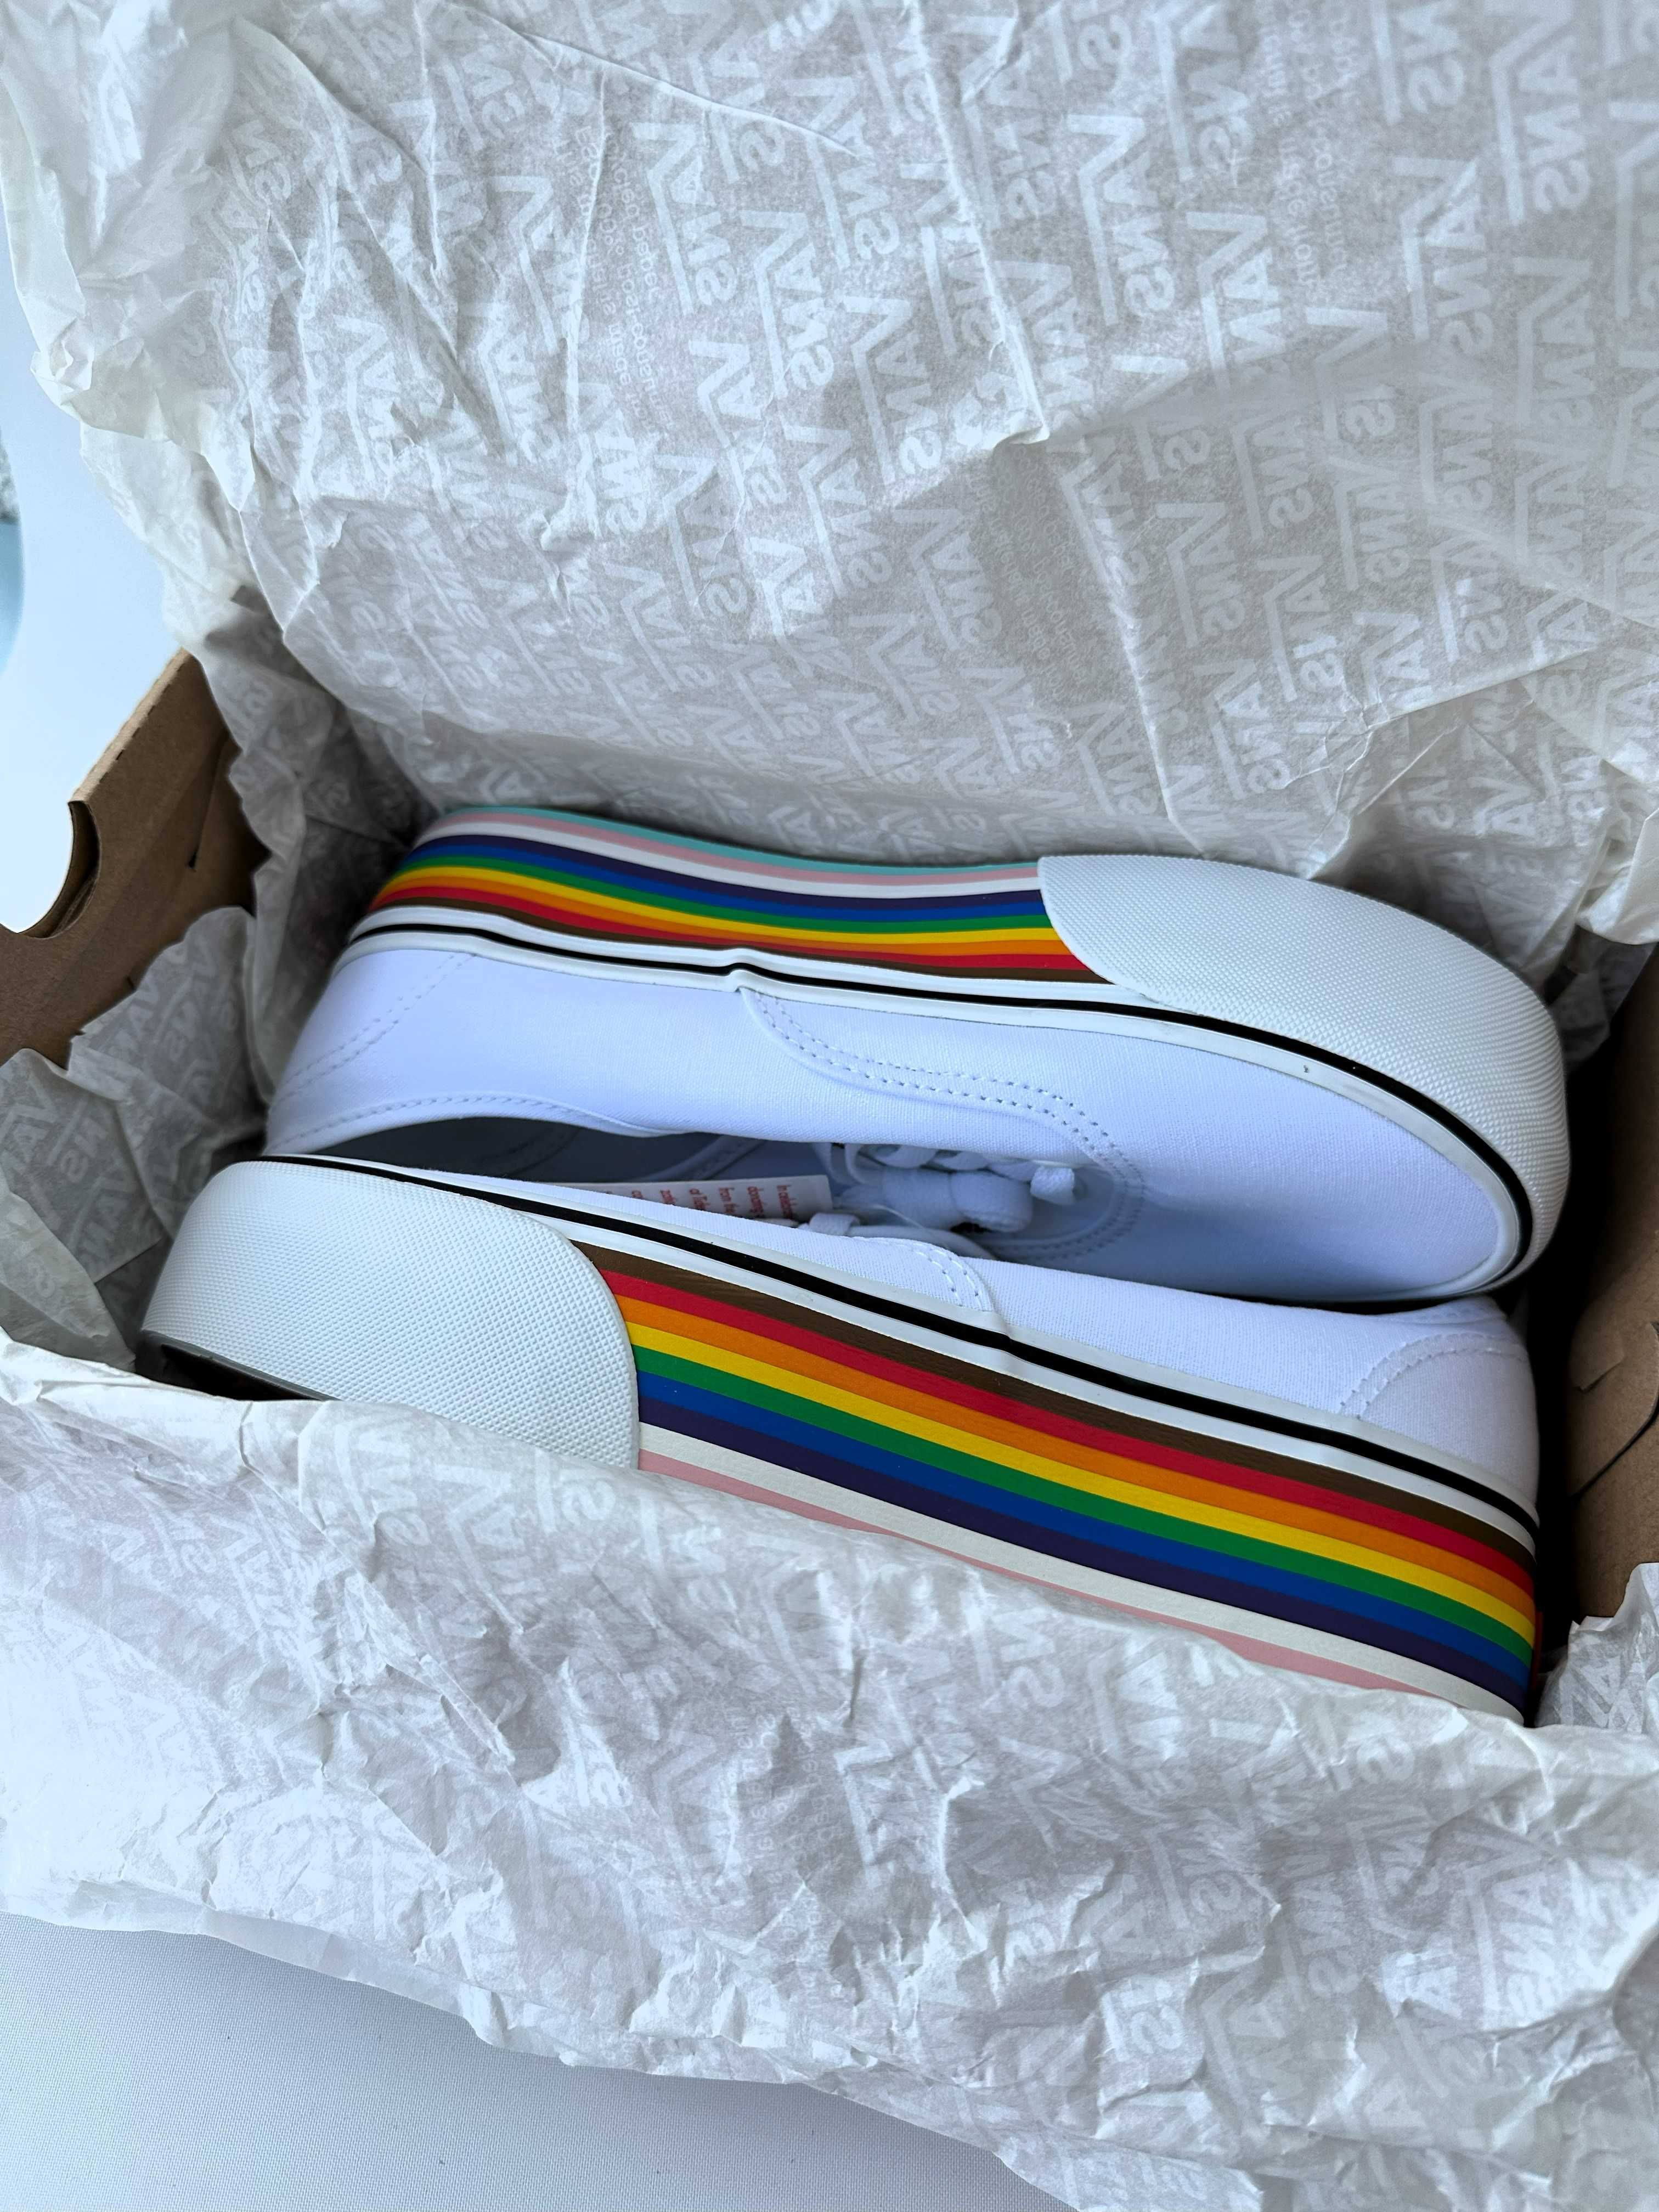 Buty Vans Pride Rainbow LGBT Białe Rozmiar 39 Białe Tęcza Skate